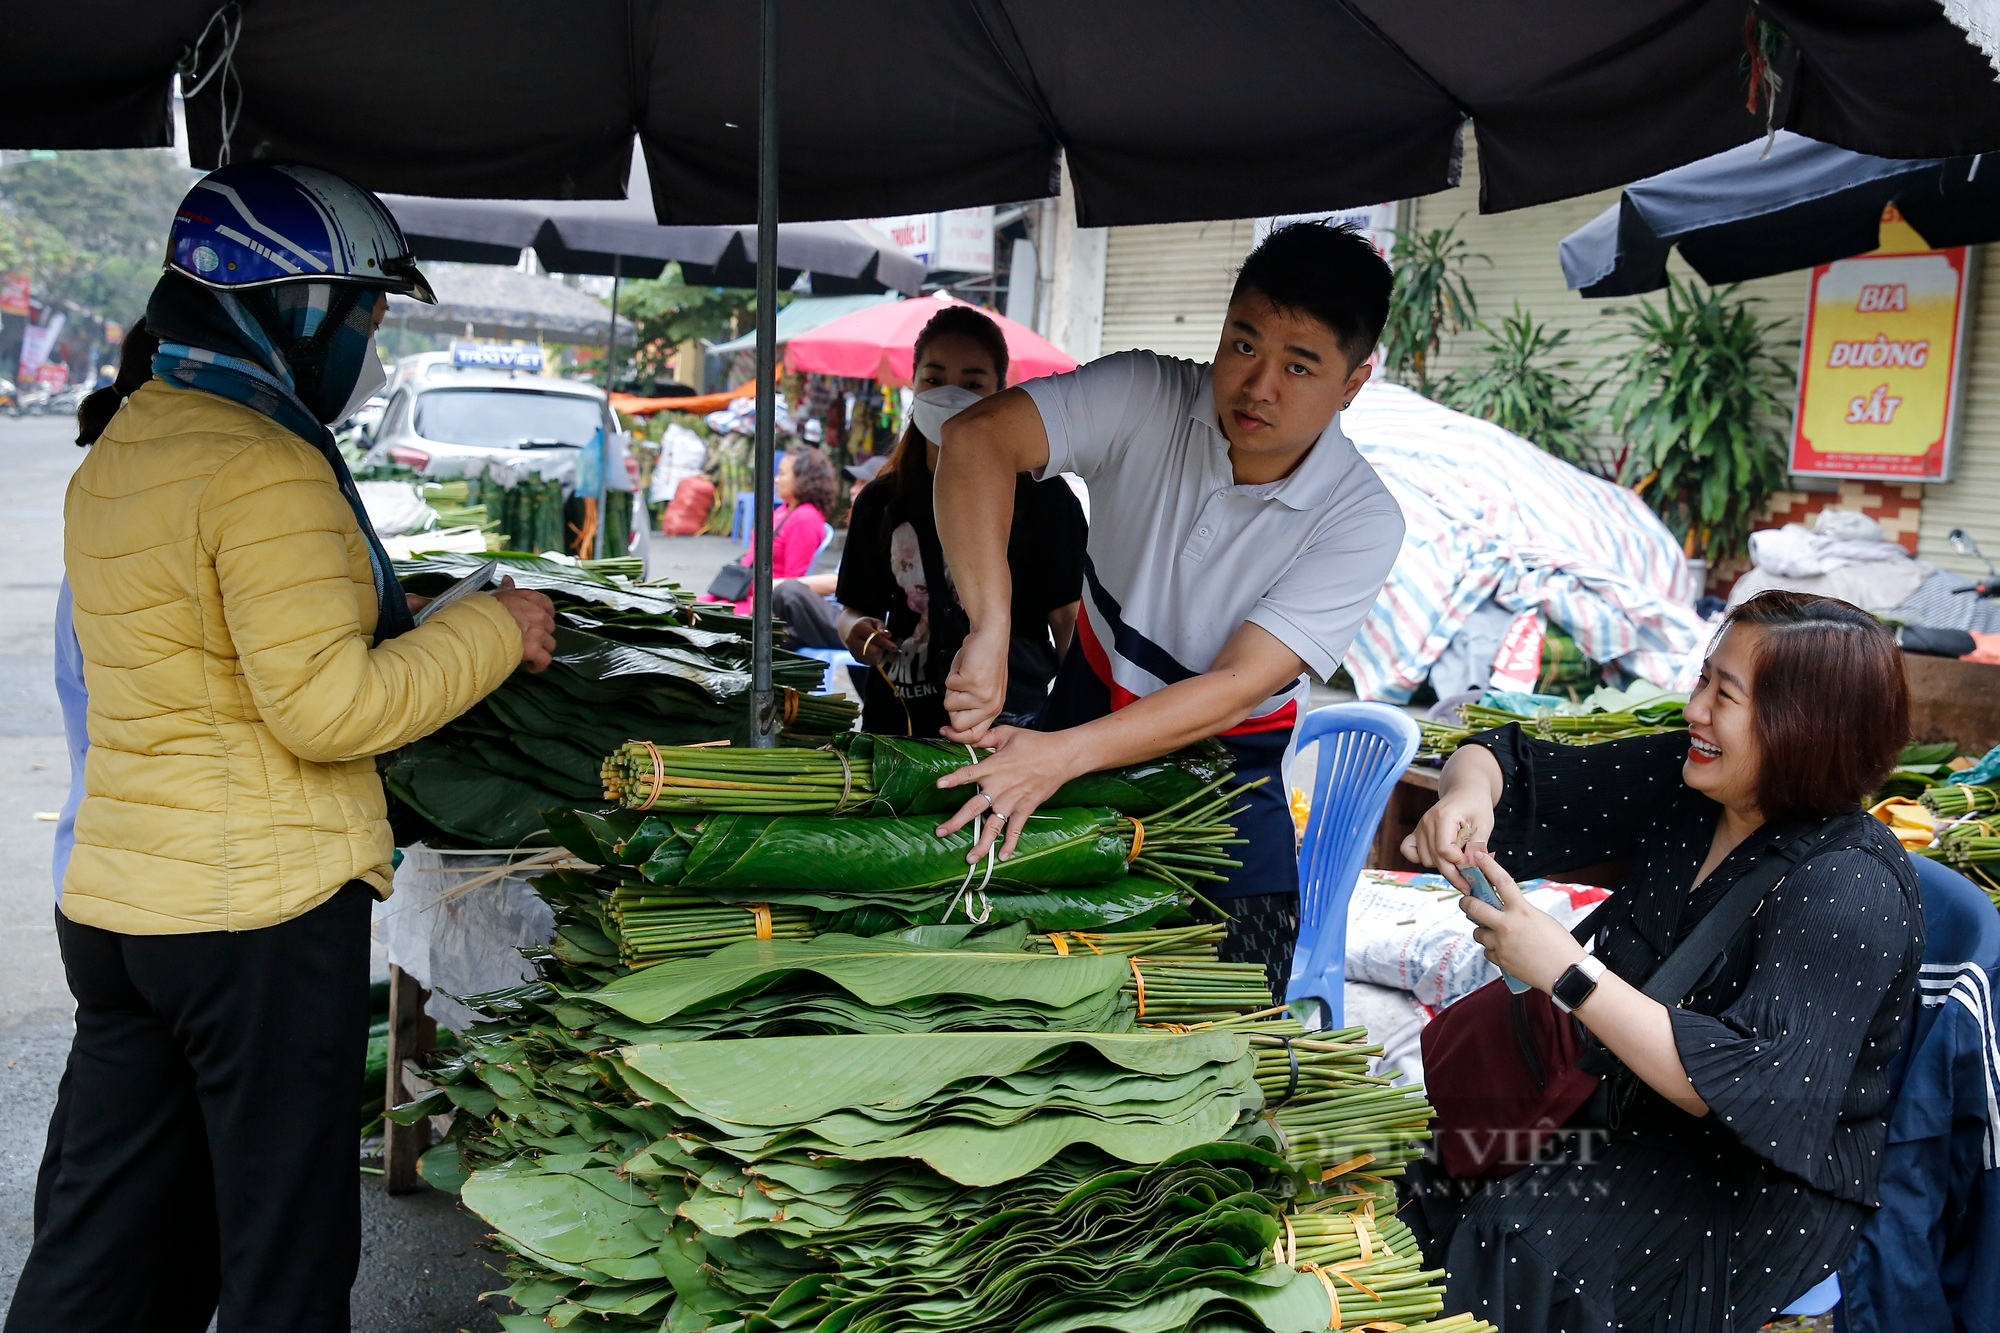 Chợ lá dong gói bánh chưng lâu đời nhất Hà Nội nhộn nhịp trước Tết  - Ảnh 6.